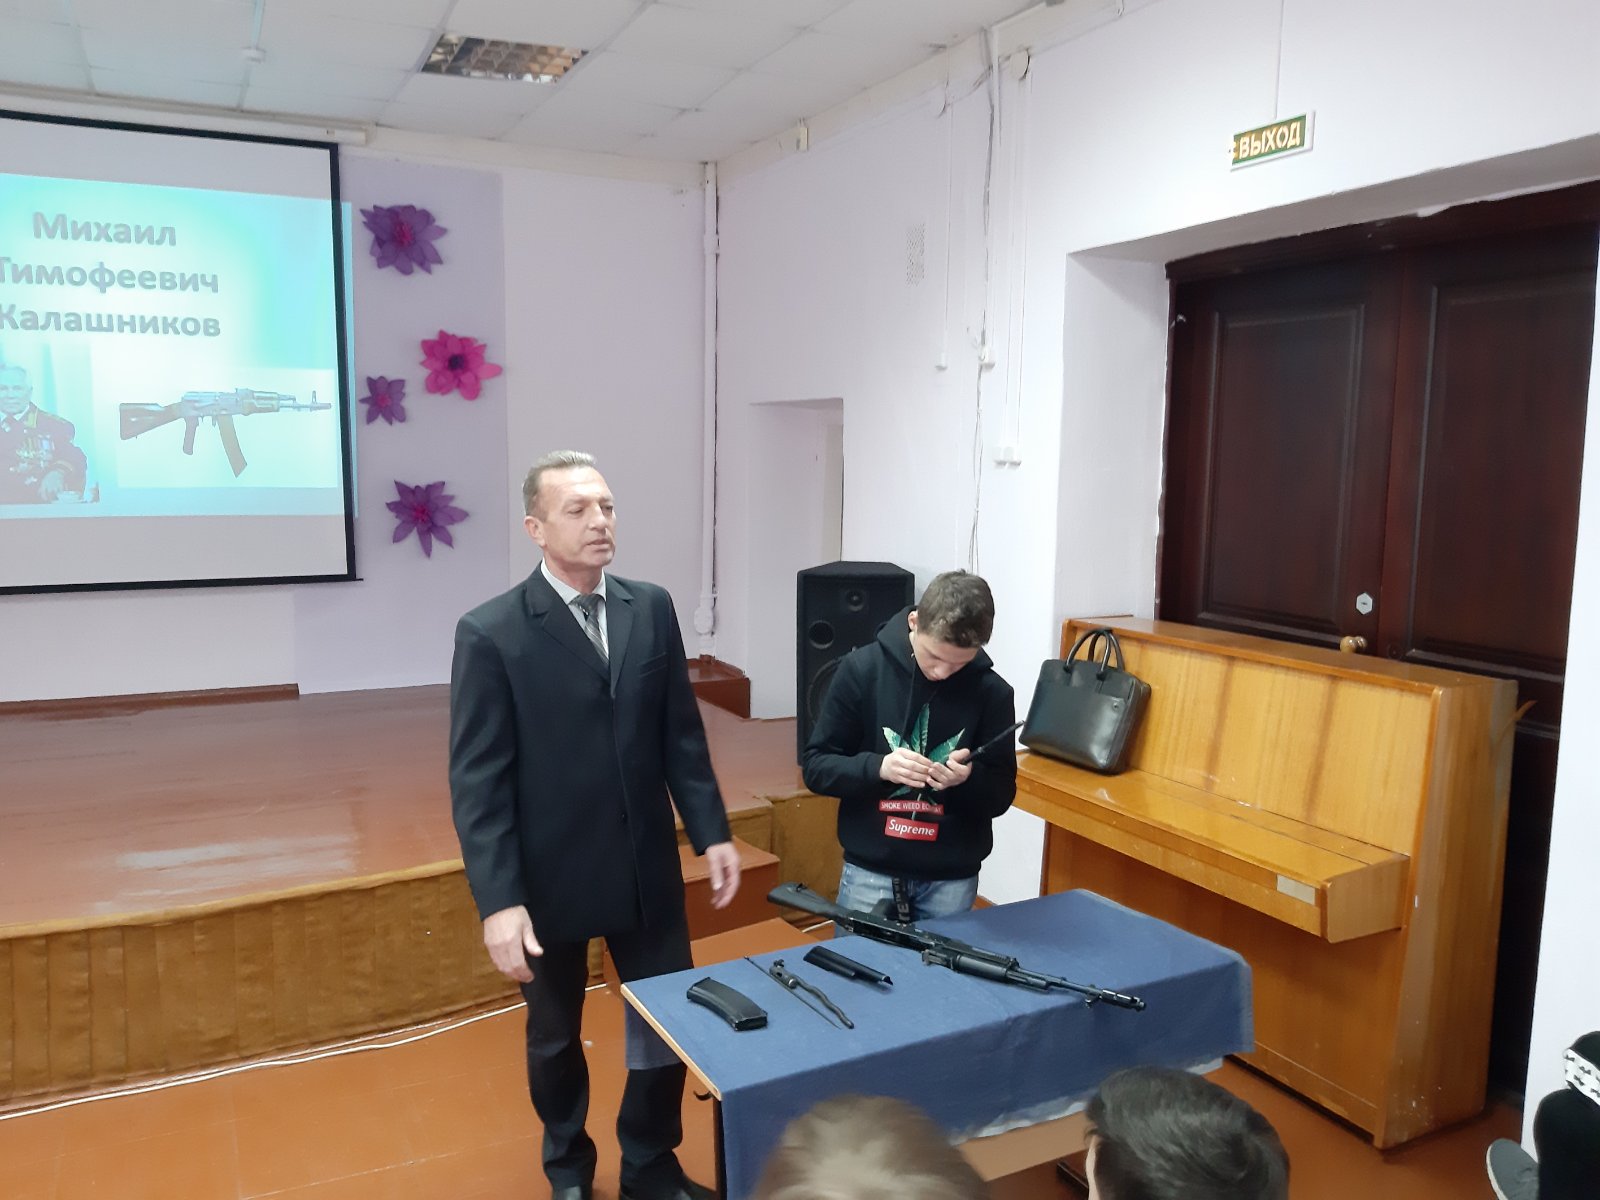 Novosti_2019_/Kalashnikov/izobrazhenie_viber_2019-11-18_13-17-44.jpg